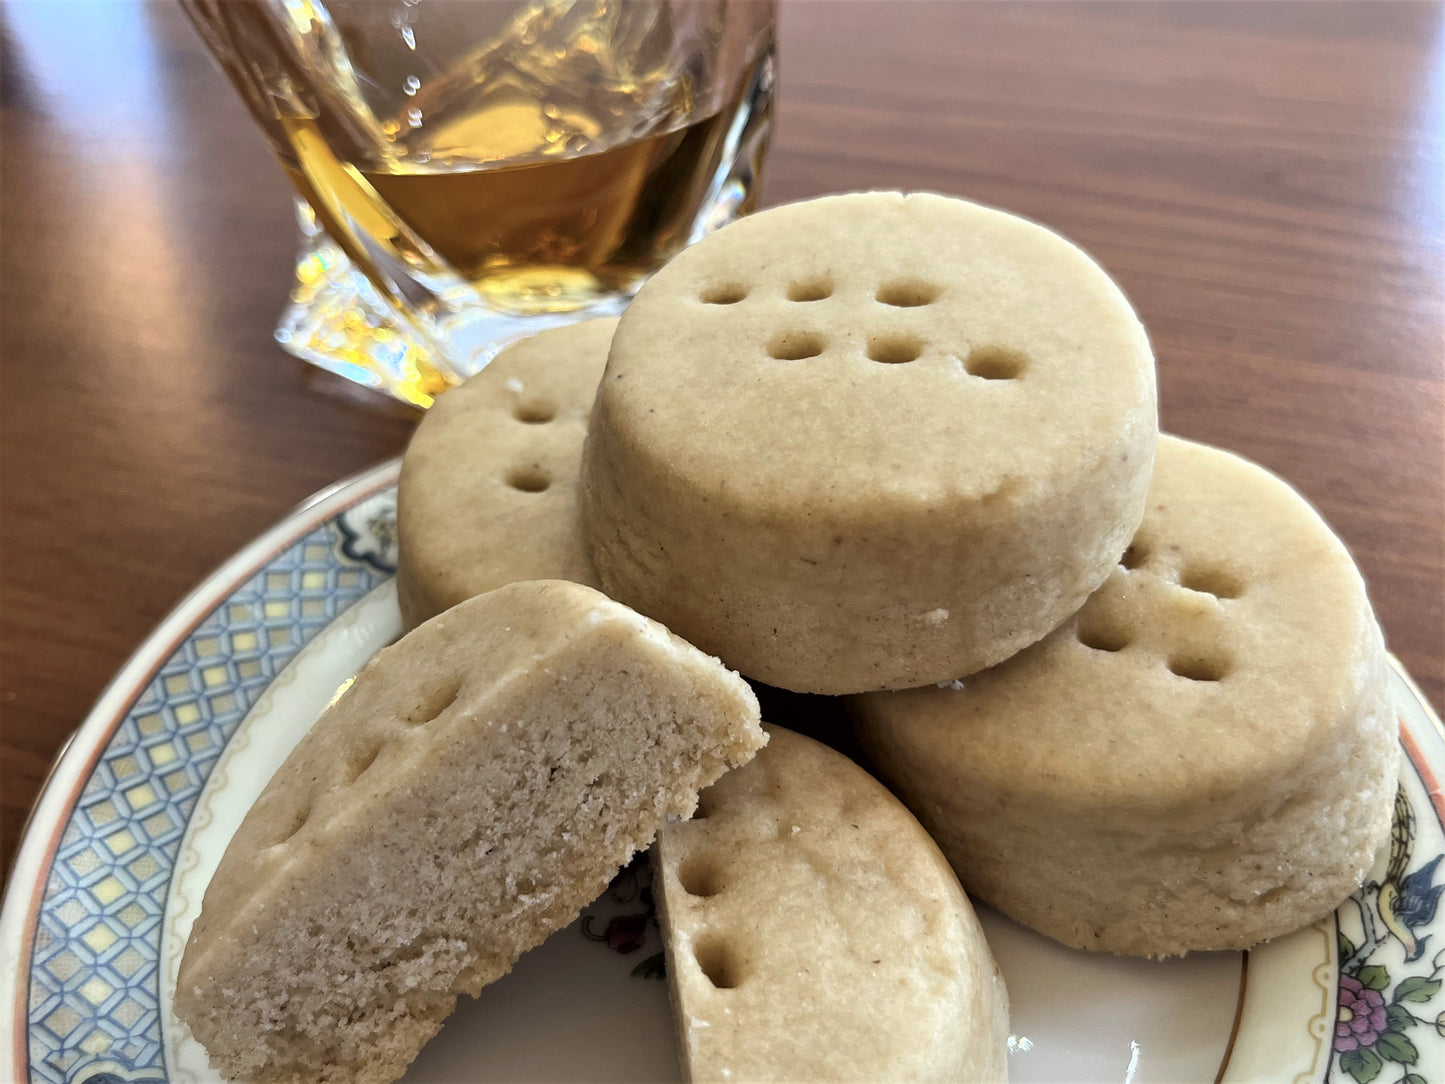 5. Caraway / BourbonGlaze Shortbread Cookies - 12 cookies